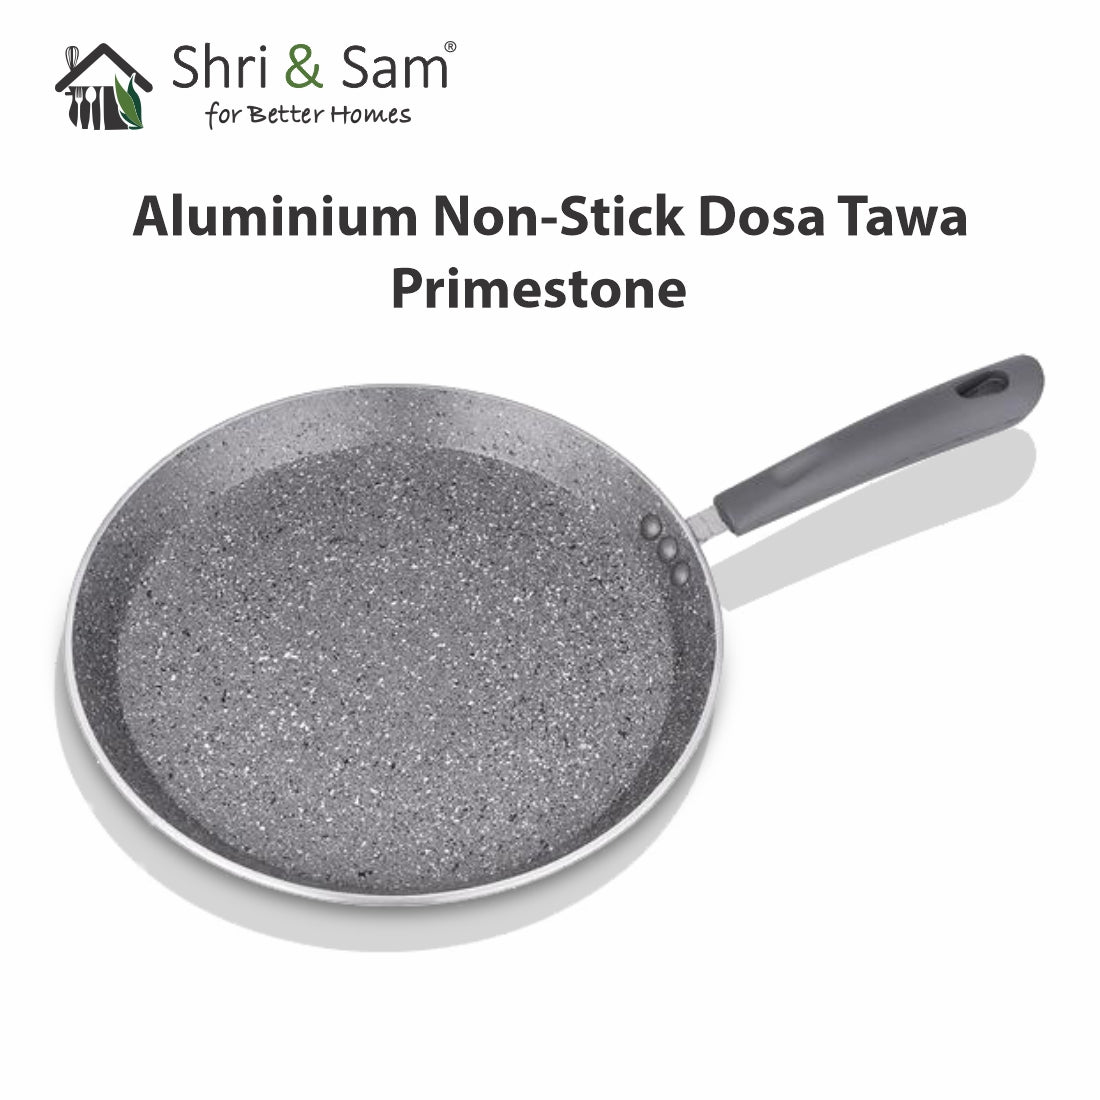 Aluminium Non-Stick Dosa Tawa Primestone